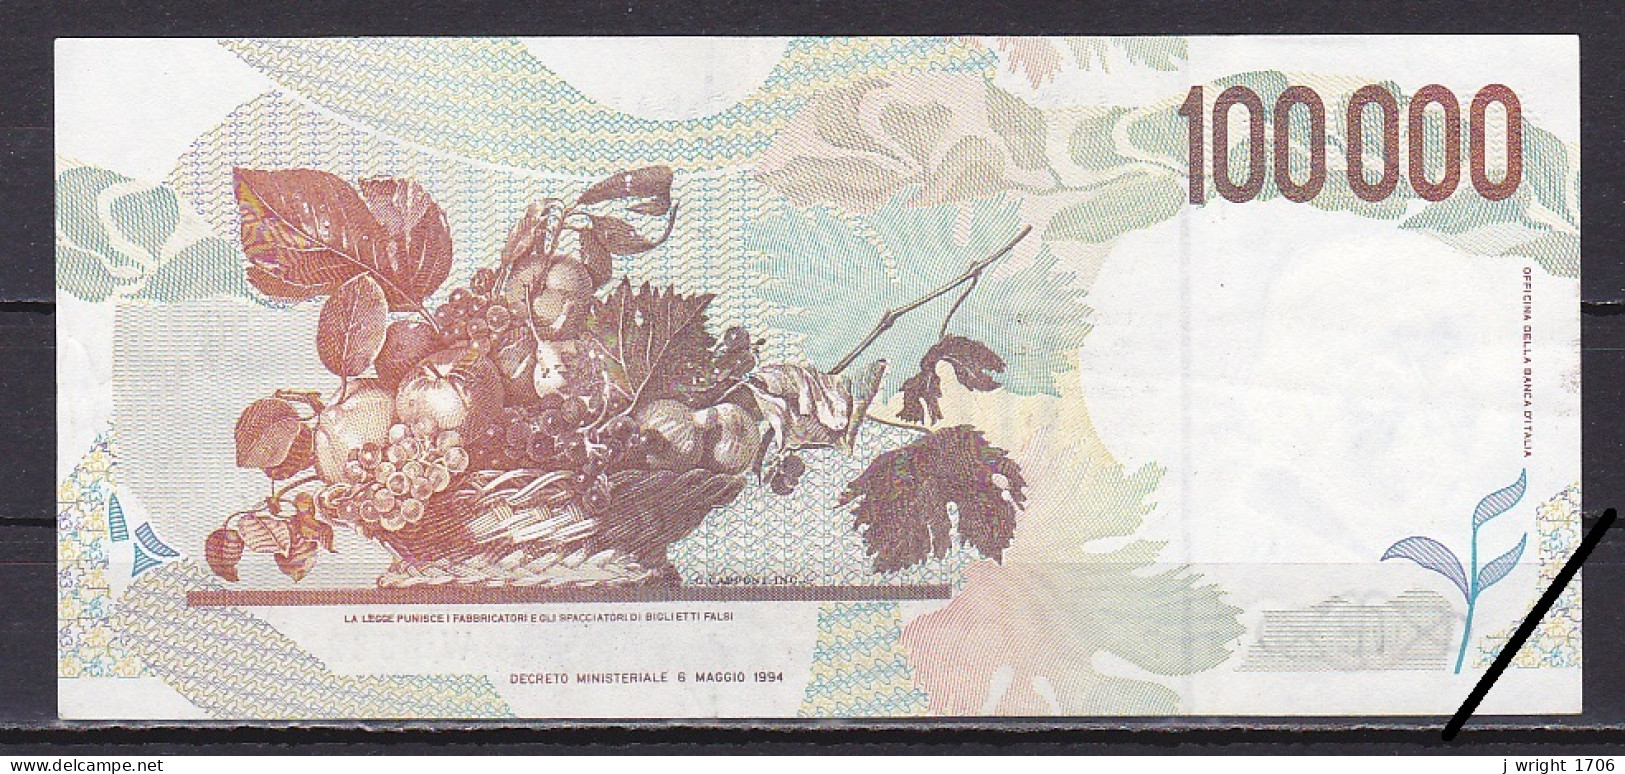 Italy, 100,000 Lire, 1994/Fazio & Speziali Prefix WB Suffix P, Grade VF - 100000 Lire